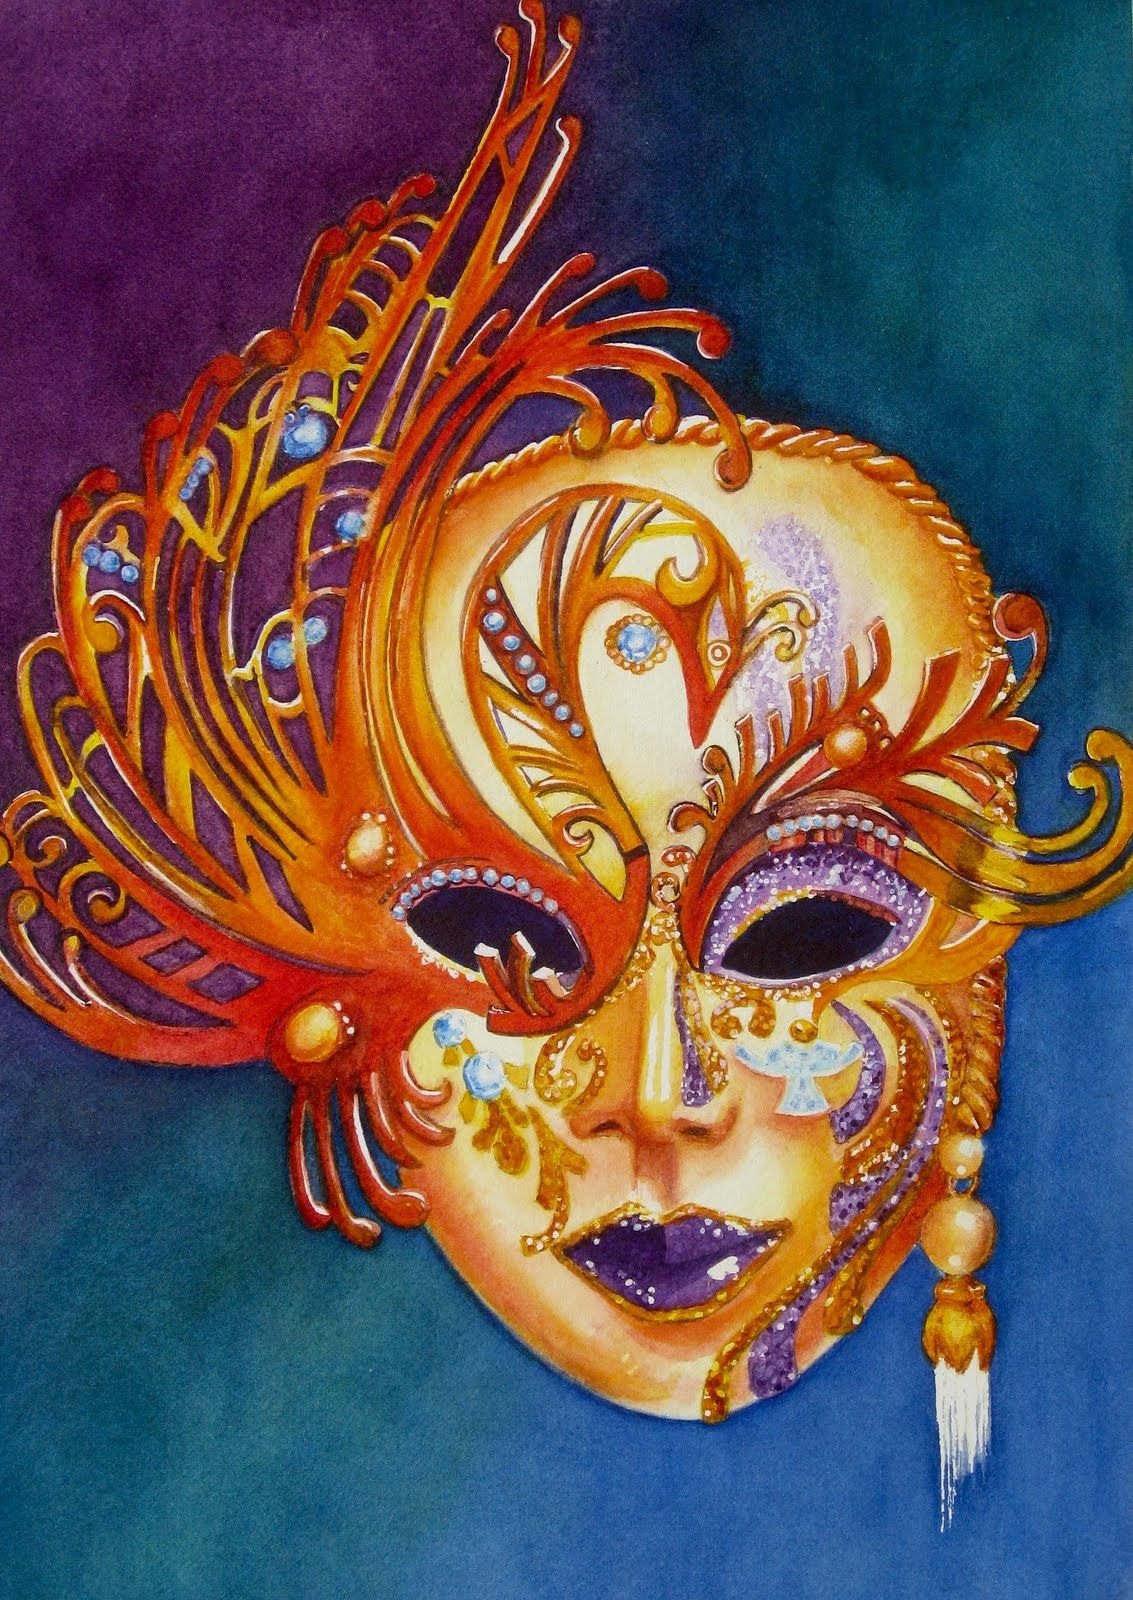 Рисунок в цвете театральной маски жанр любой - фото и картинки  abrakadabra.fun